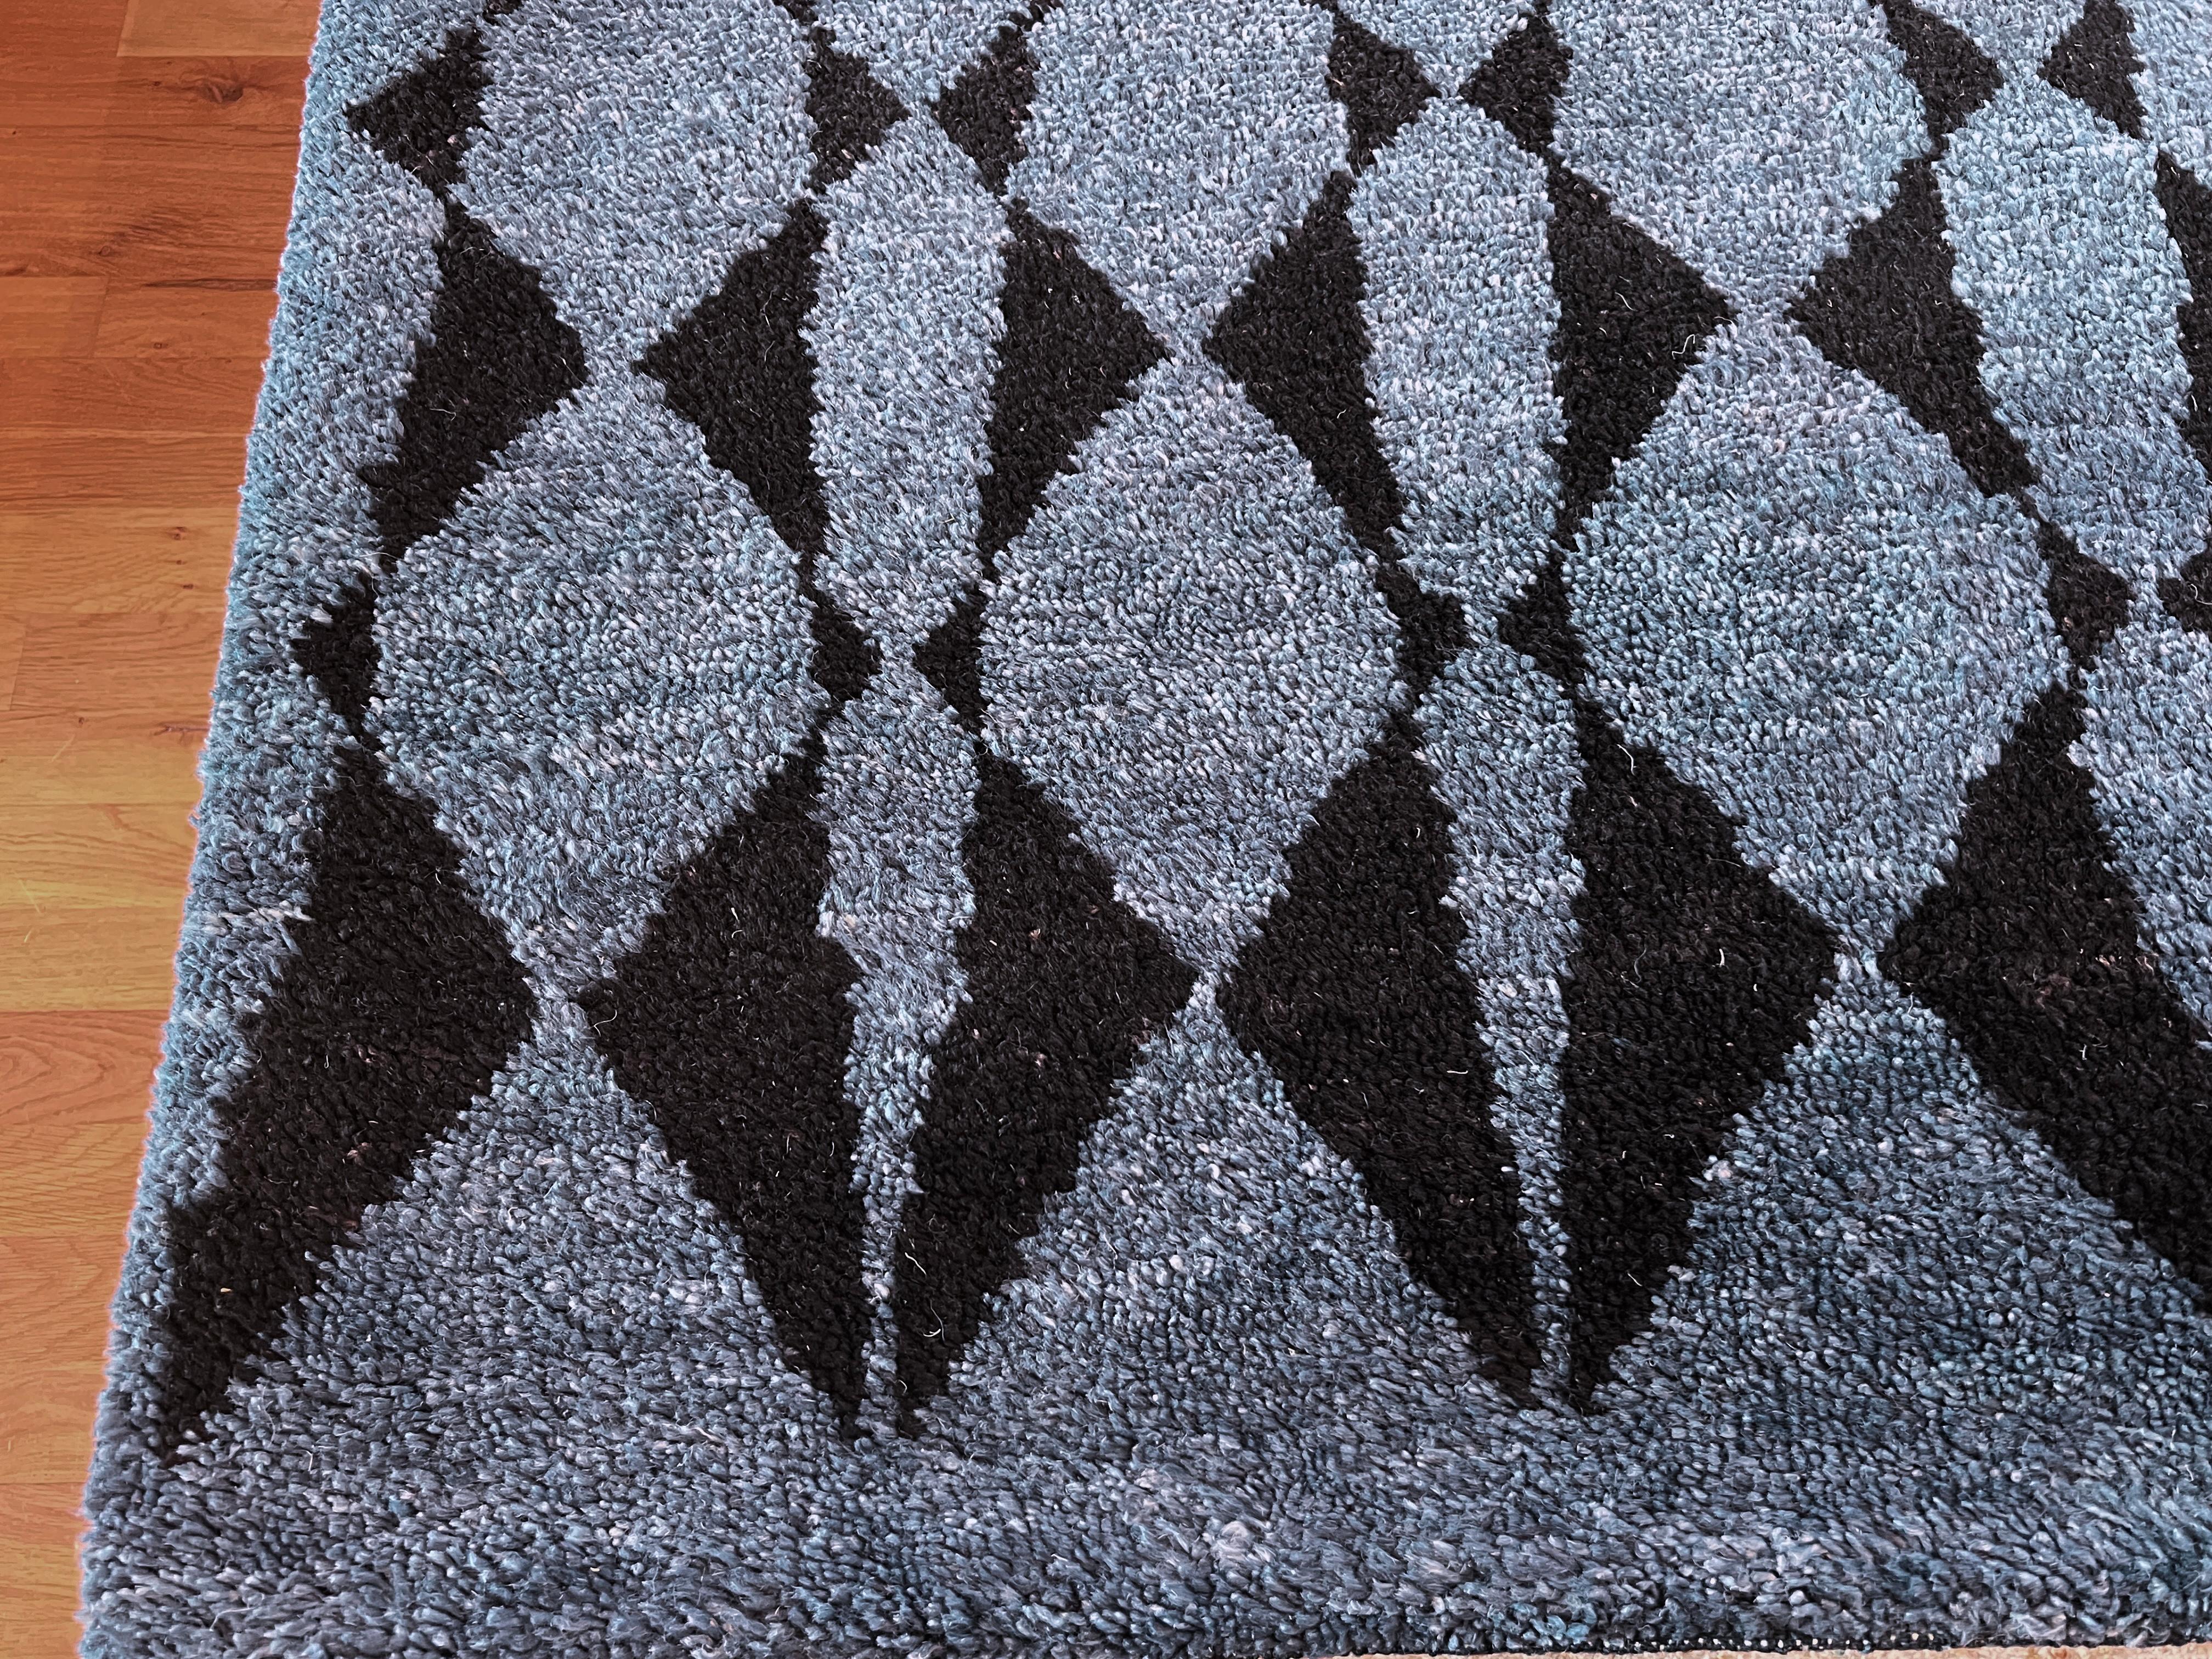 Verleihen Sie Ihrem Zuhause mit unserem marokkanischen Teppich 9'x12' einen Hauch von modernem Stammesstil. Der leuchtend marineblaue Hintergrund und die schwarzen Rauten setzen in jedem Raum einen Akzent. Dieser weiche und strapazierfähige Teppich